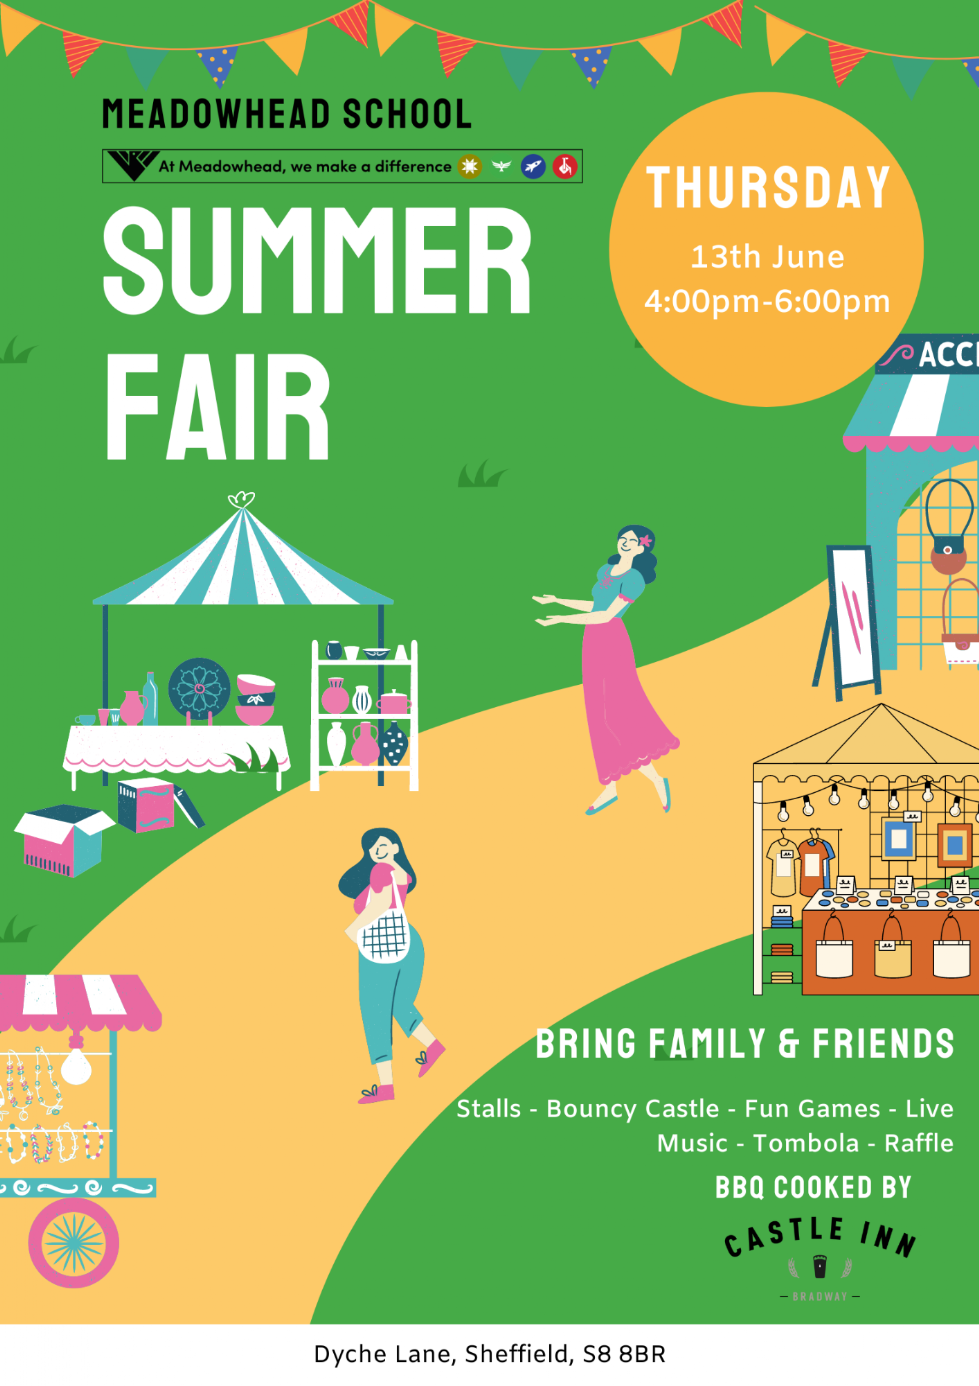 Summer Fair advert 13th June at Meadowhead school